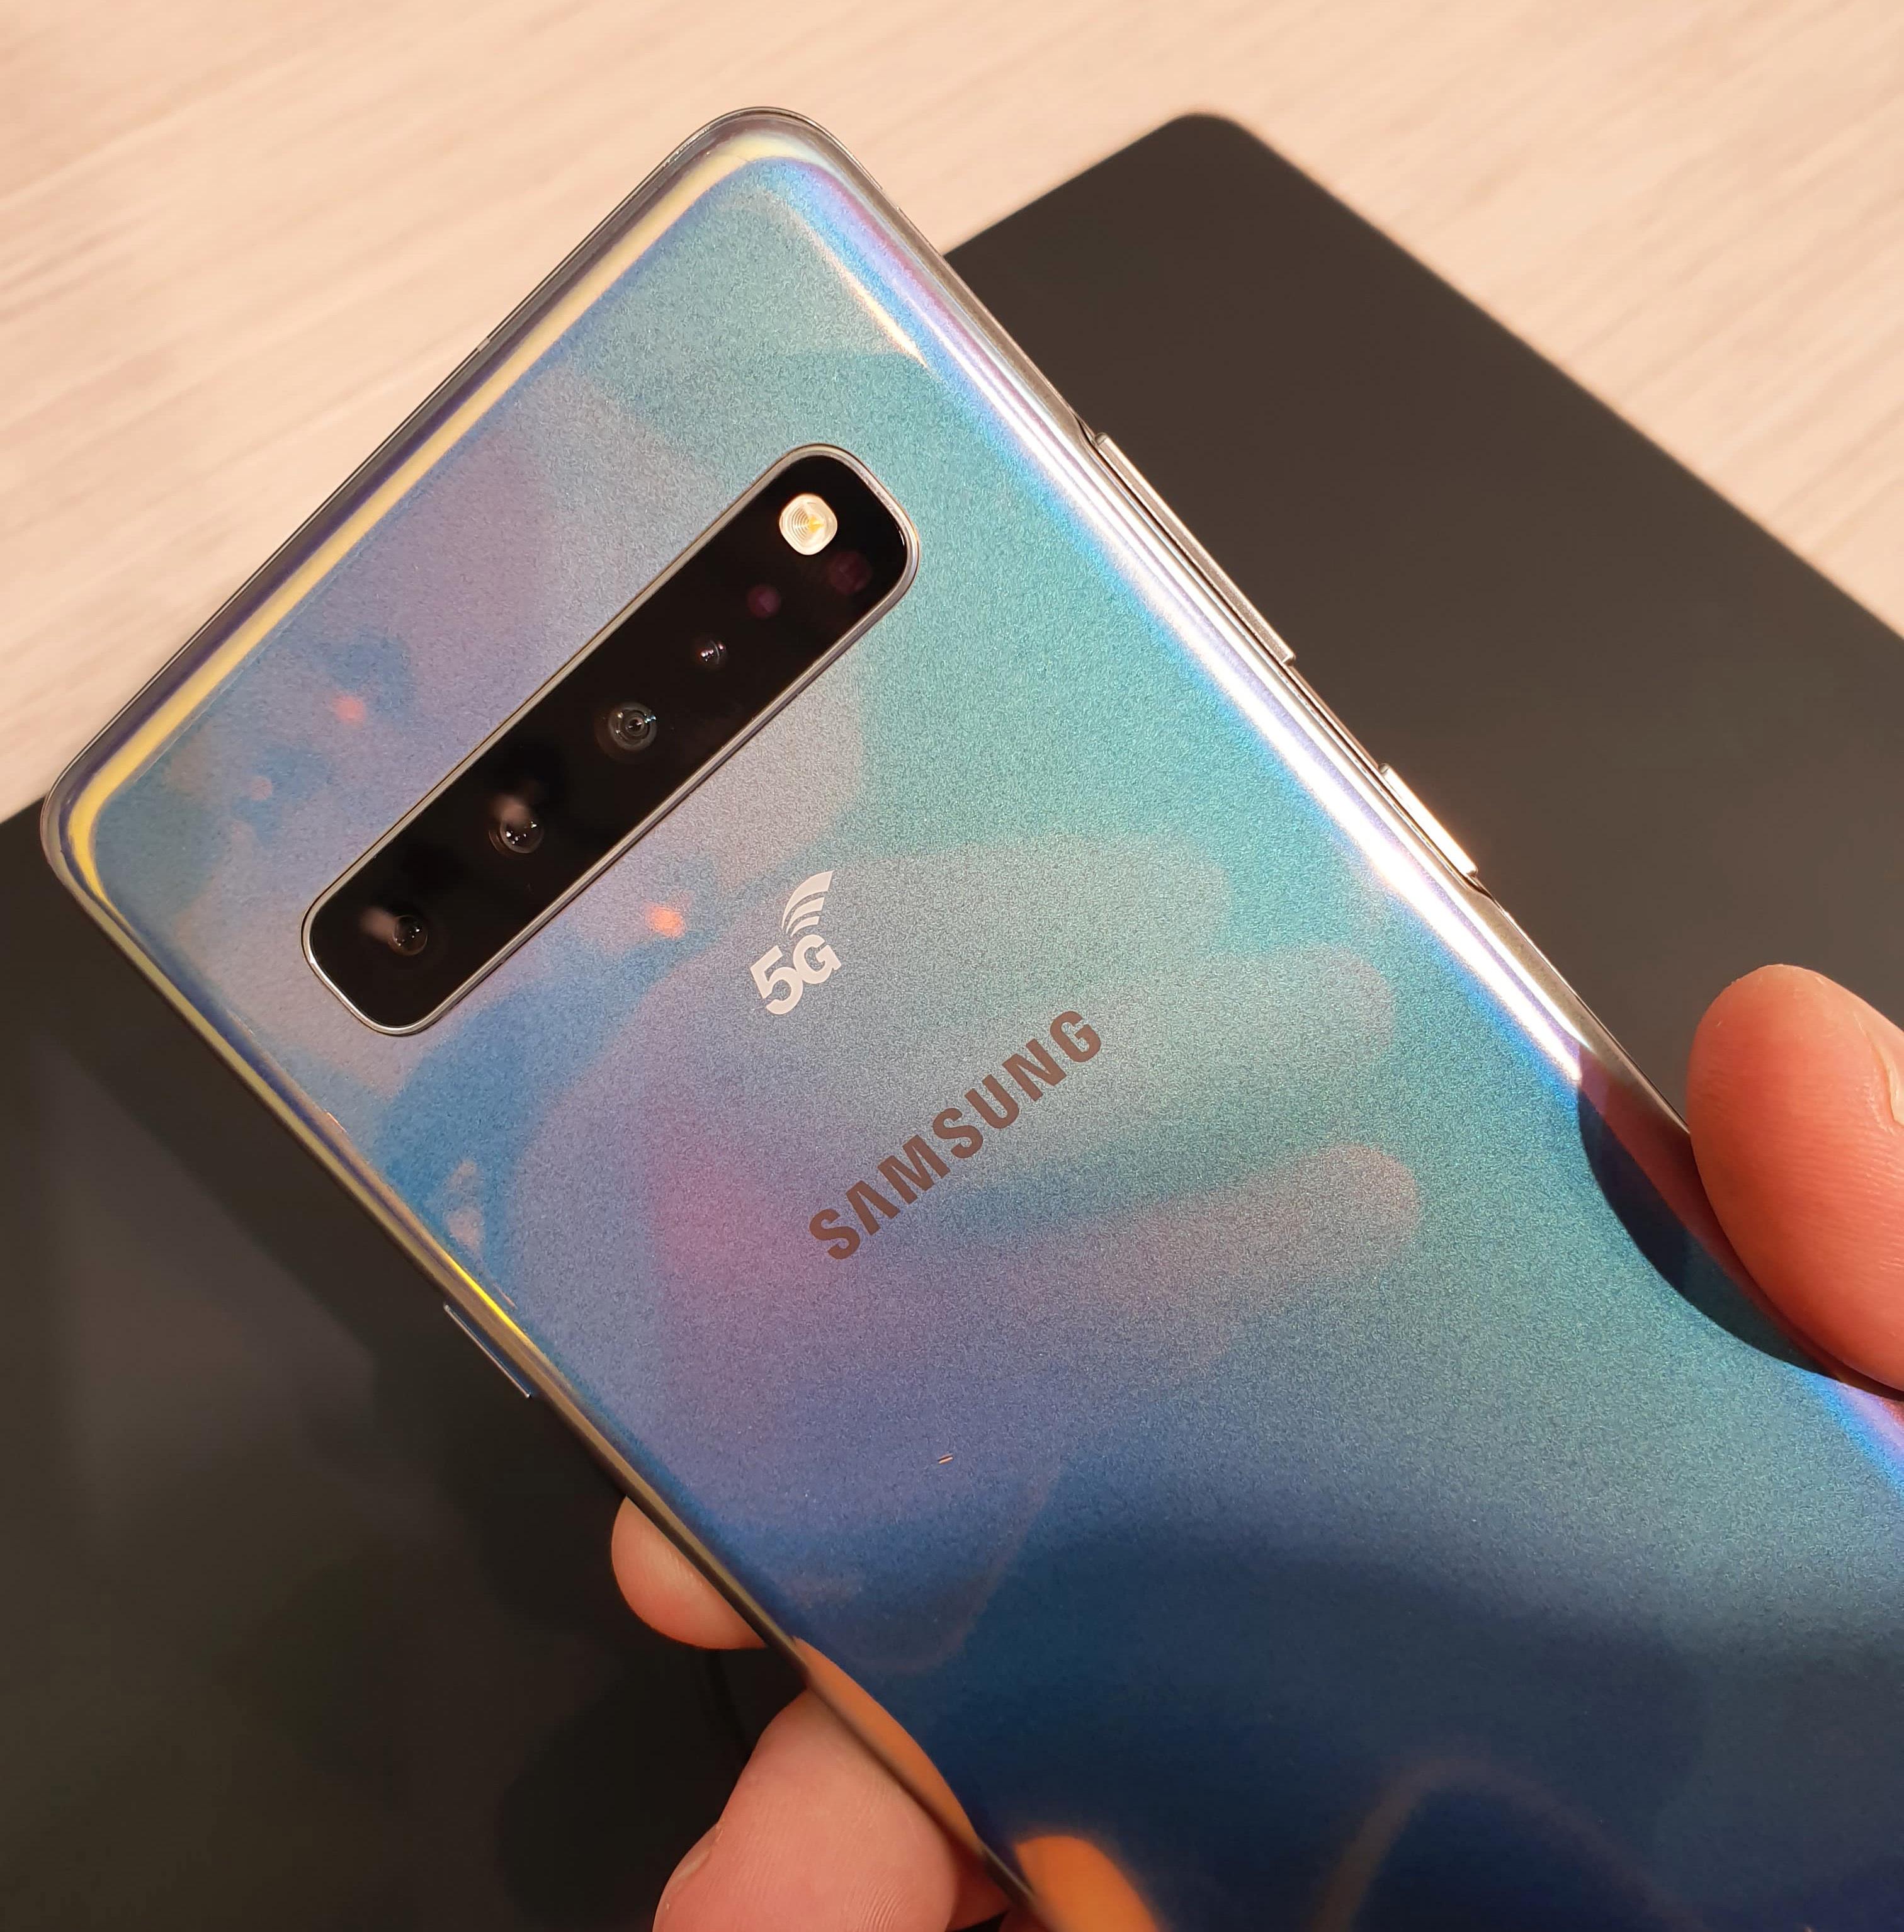 Også Samsungs Galaxy S10 finnes i en 5G-variant. Den kan finne på å dukke opp så fort mobilnettene er klare.